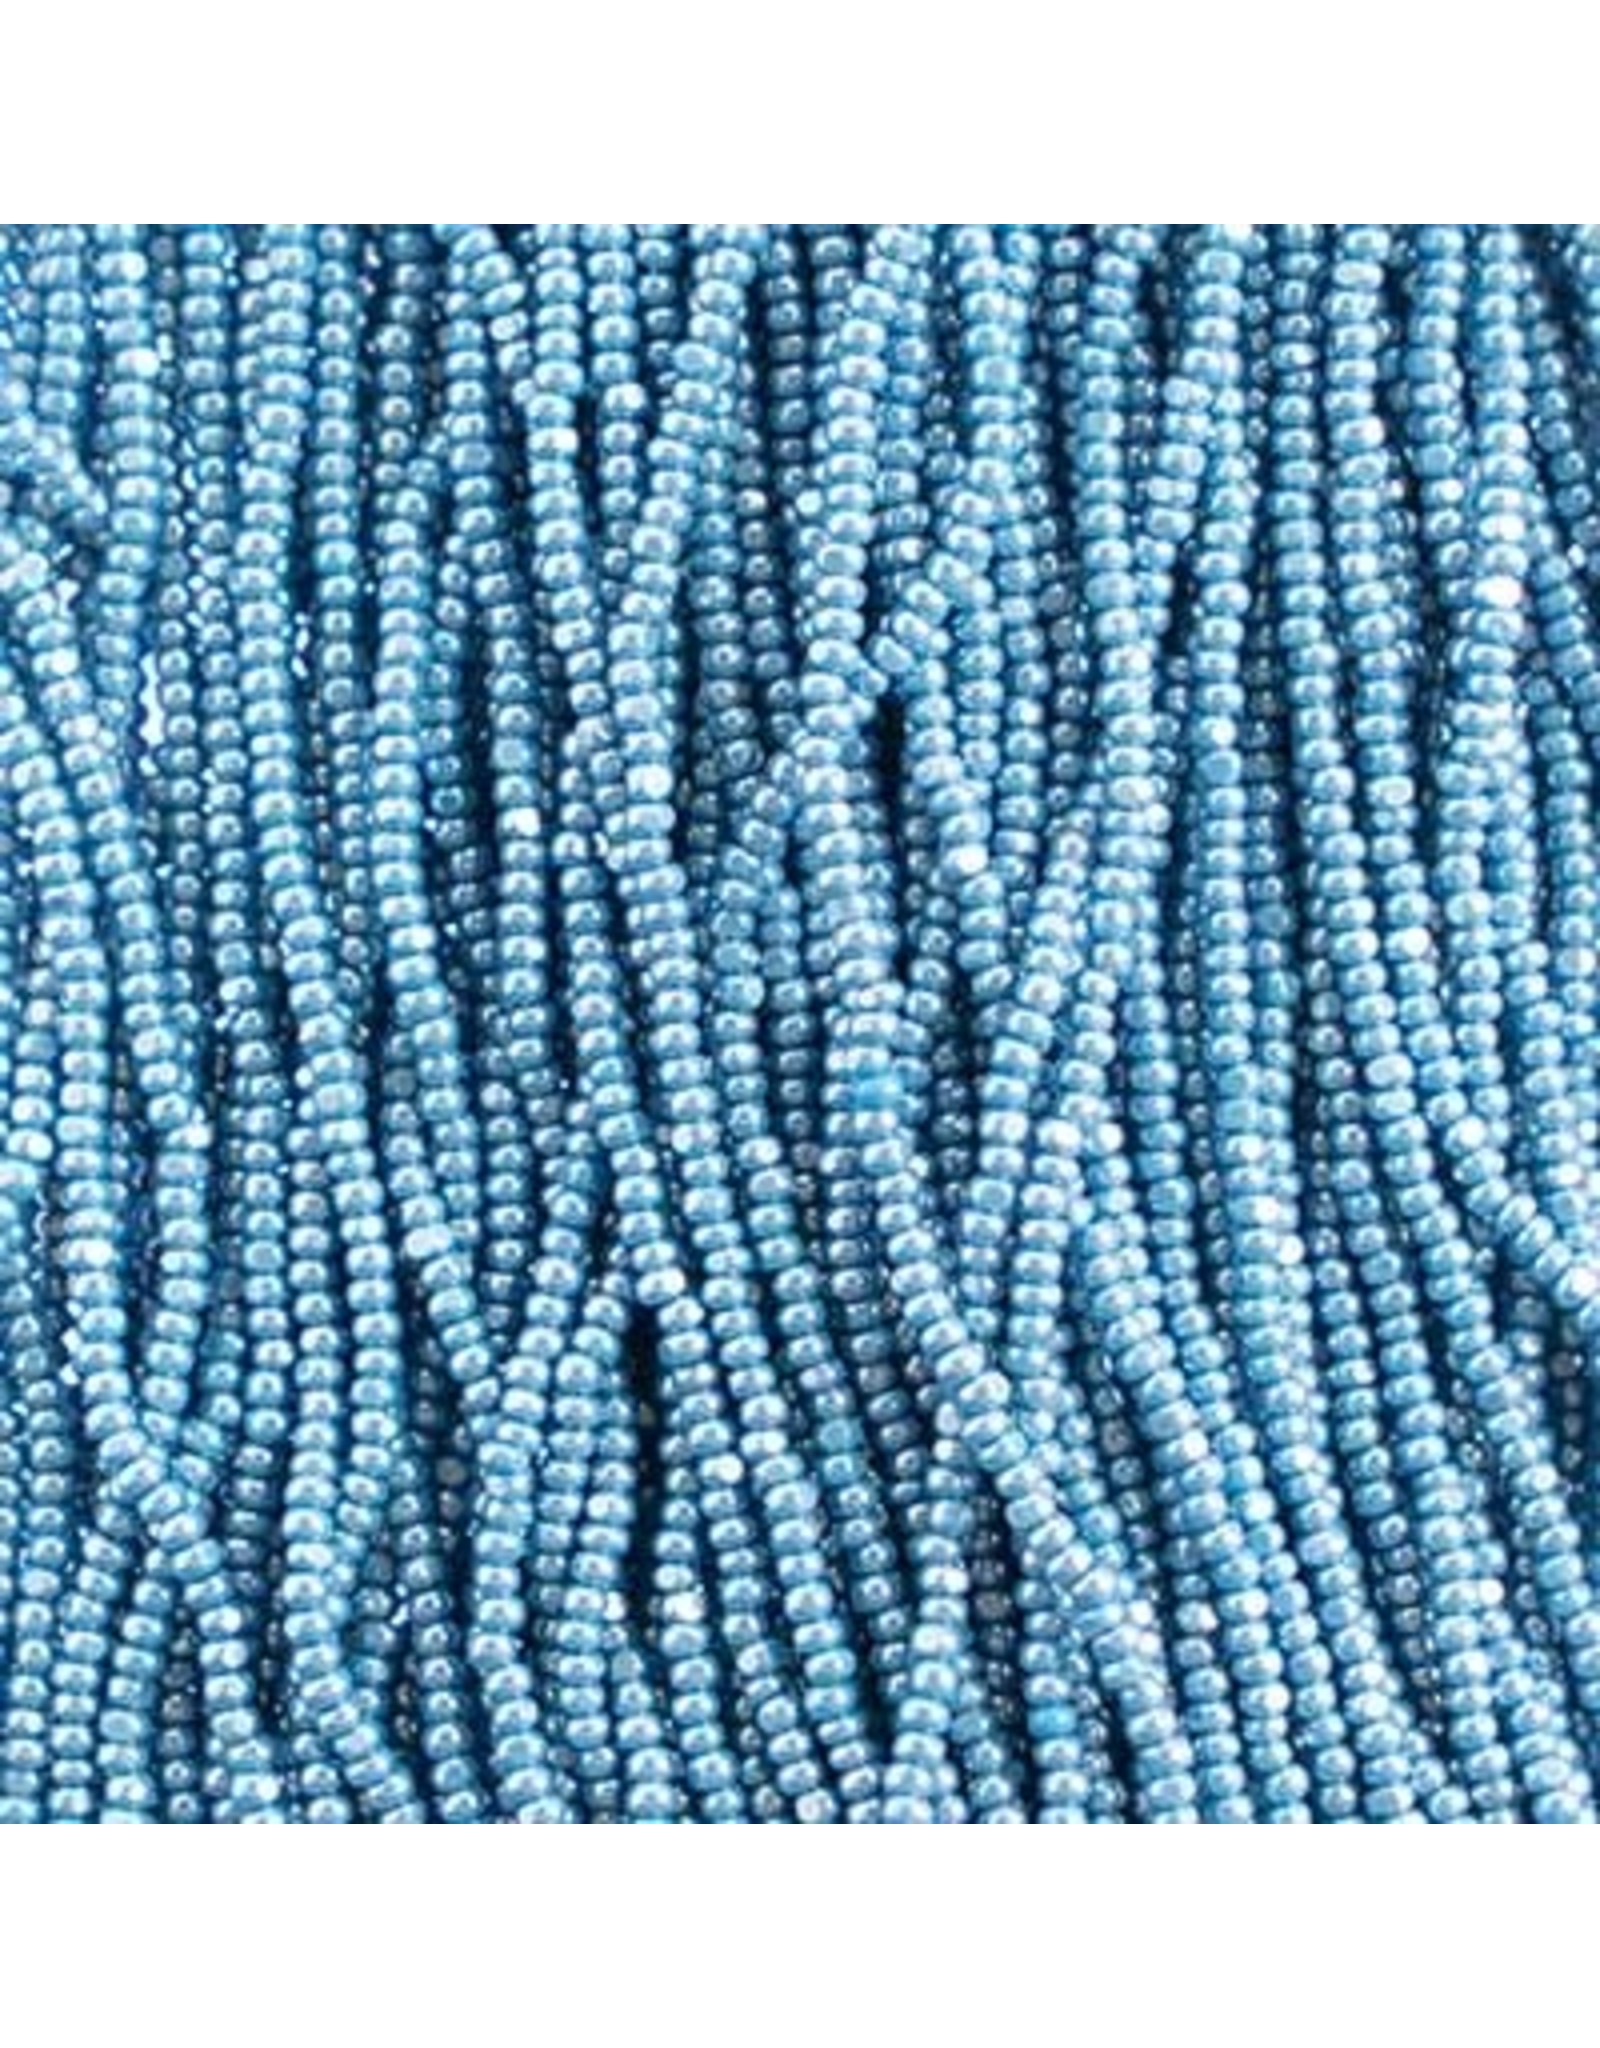 Czech 601063 13/0 Charlotte Cut Seed Hank 12g  Opaque Medium Blue Lustre